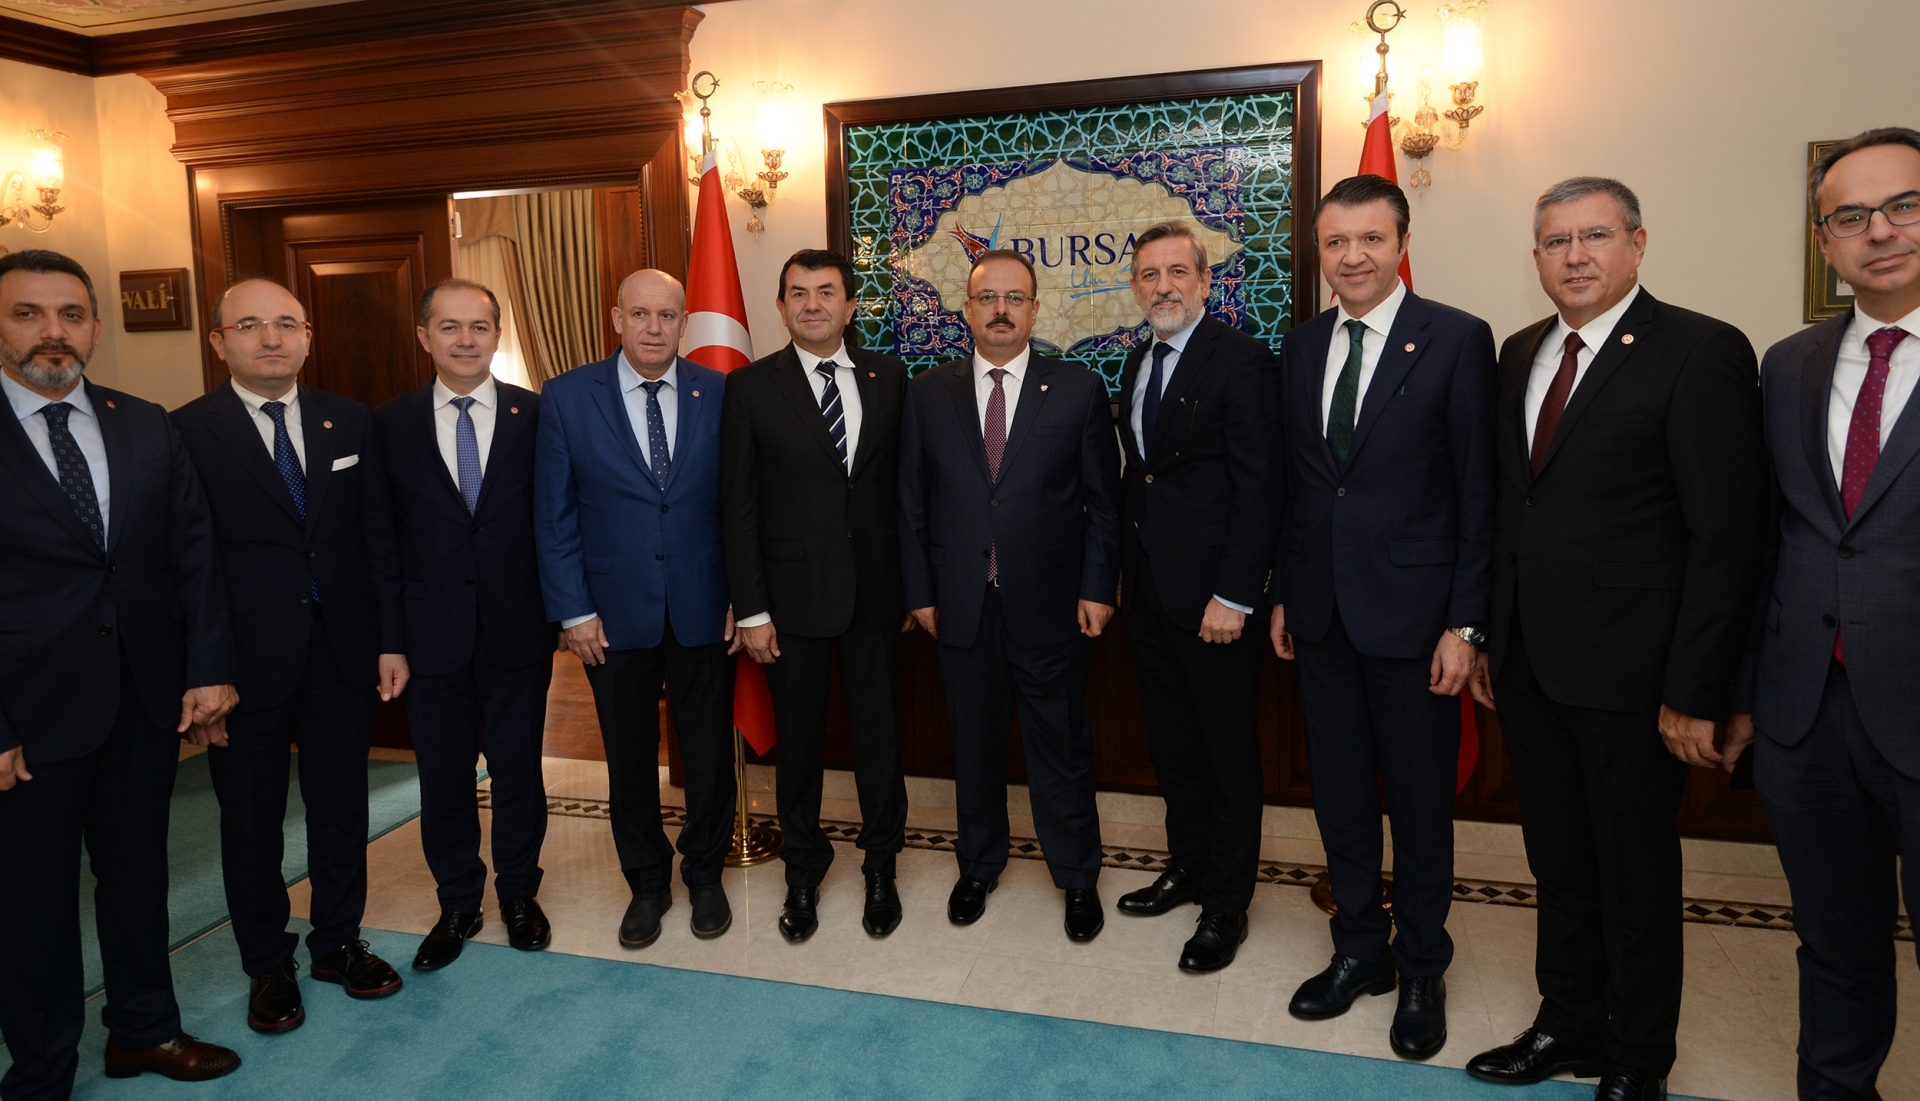  Bursa Valisi Yakup Canbolat’a hayırlı olsun ziyaretinde bulundu.